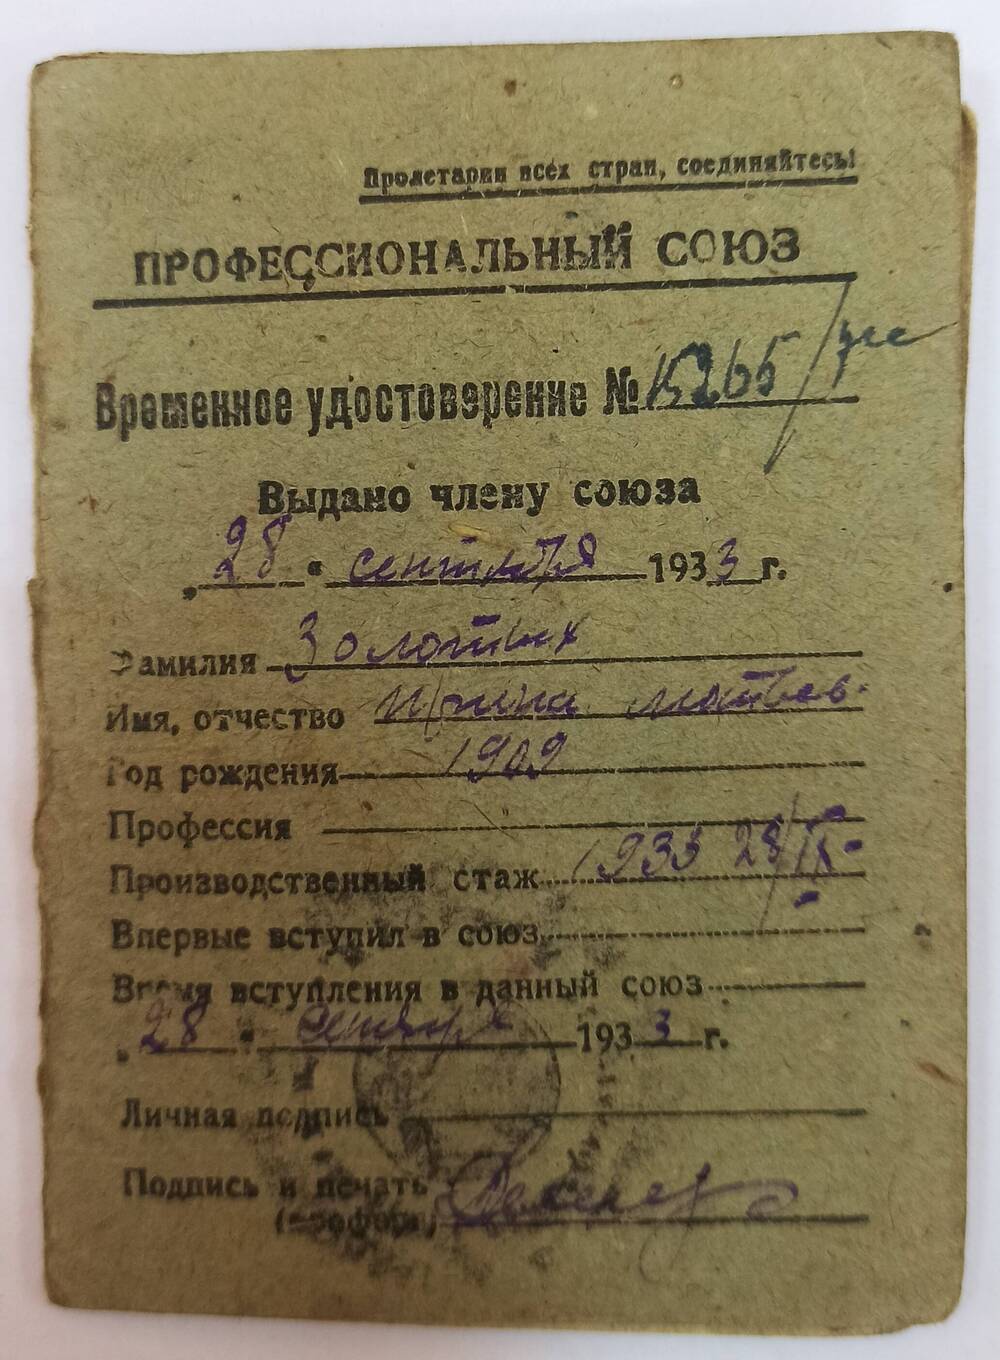 Временное удостоверение №15265, выдано члену союза - Золотых Ирина Матвеевна 28 сентября 1933 года.